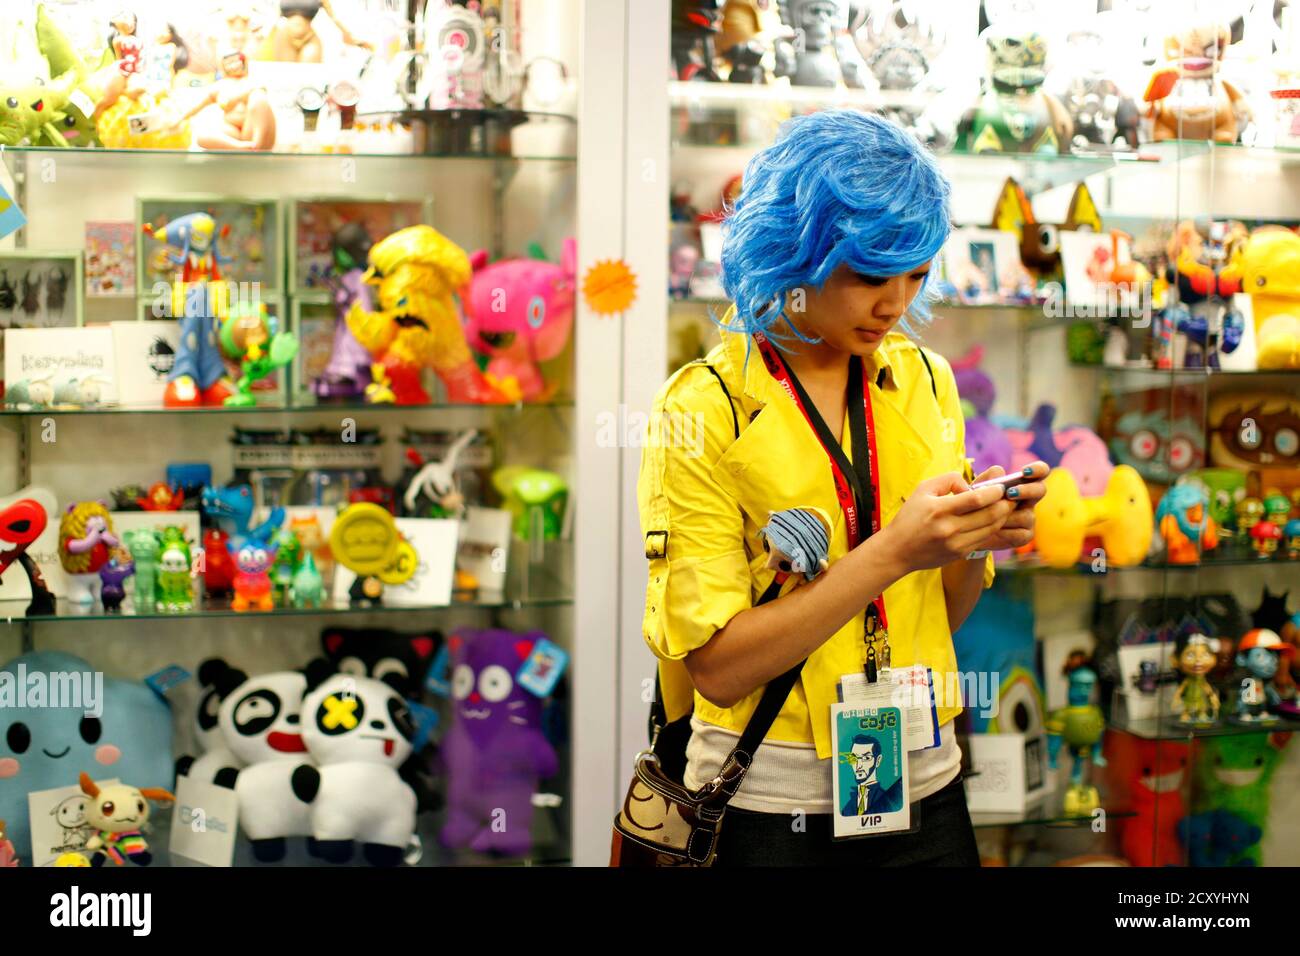 Un participant vêtu de textes de costume sur un téléphone portable dans une boutique de jouets à l'étage de la convention Comic con lors de l'événement de culture pop à San Diego, Californie le 22 juillet 2011. REUTERS/Mike Blake (ETATS-UNIS - Tags: ENTERTAINMENT SOCIETY) Banque D'Images